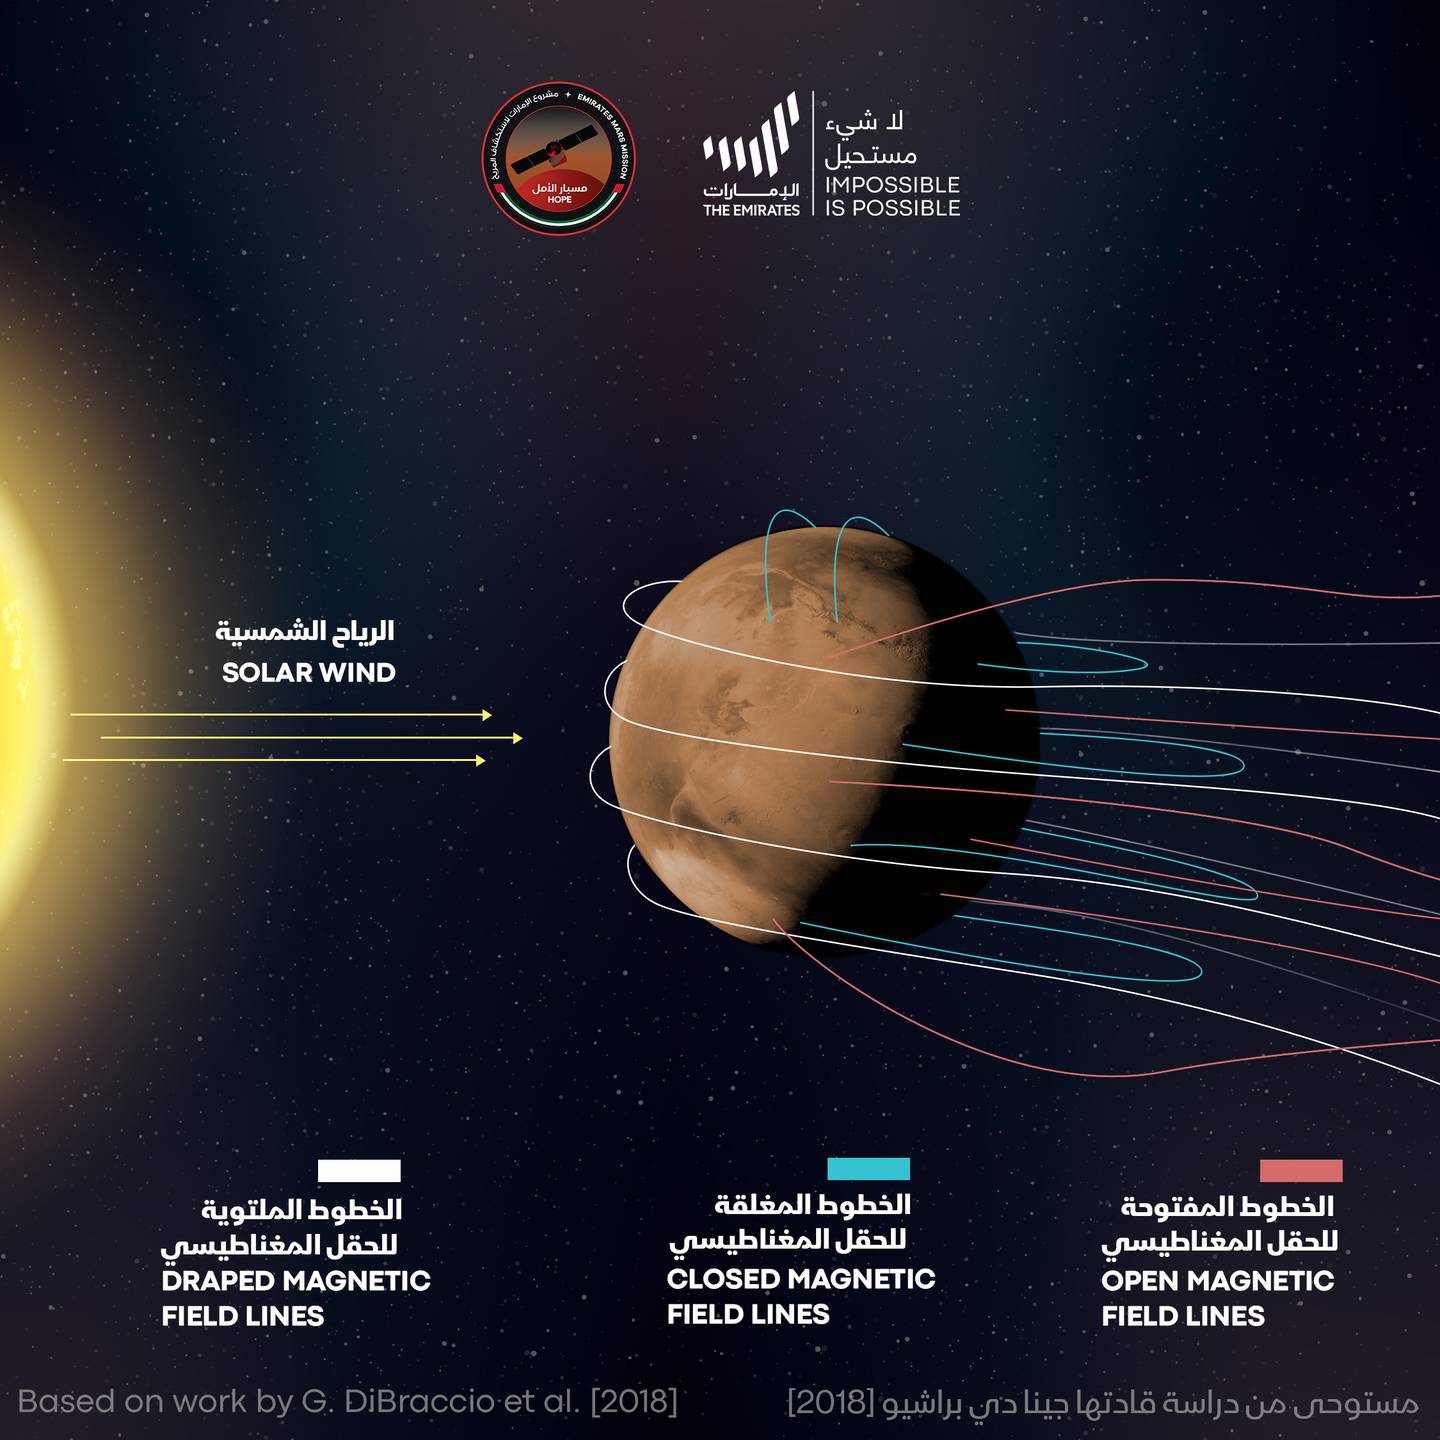 La nave espacial emiratí «Hope» descubre una nueva y misteriosa aurora boreal en la superficie de Marte